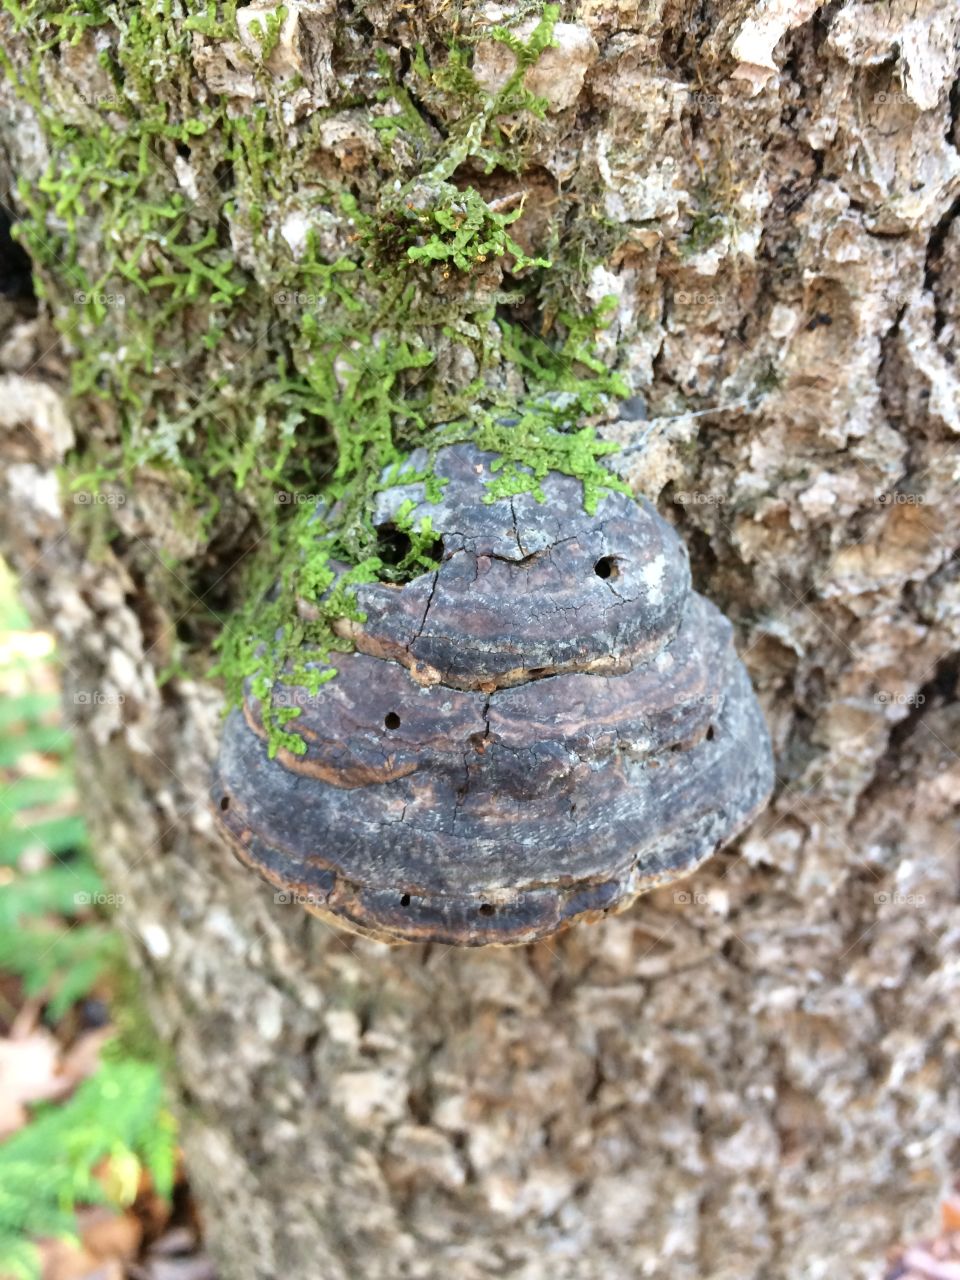 Mushroom on a dying hardwood tree